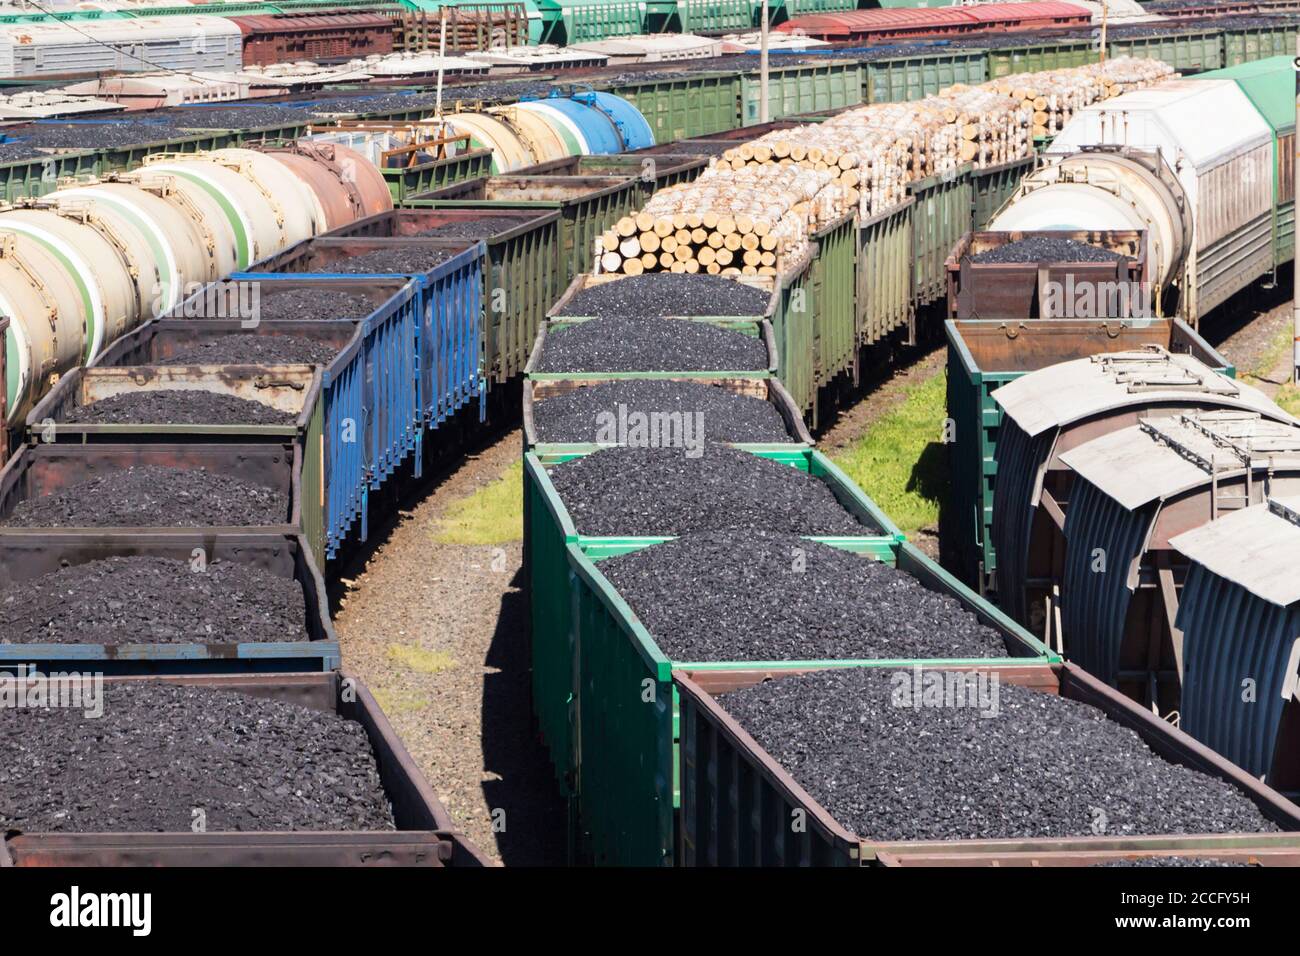 wagons chargés de charbon, un train transporte le charbon Banque D'Images